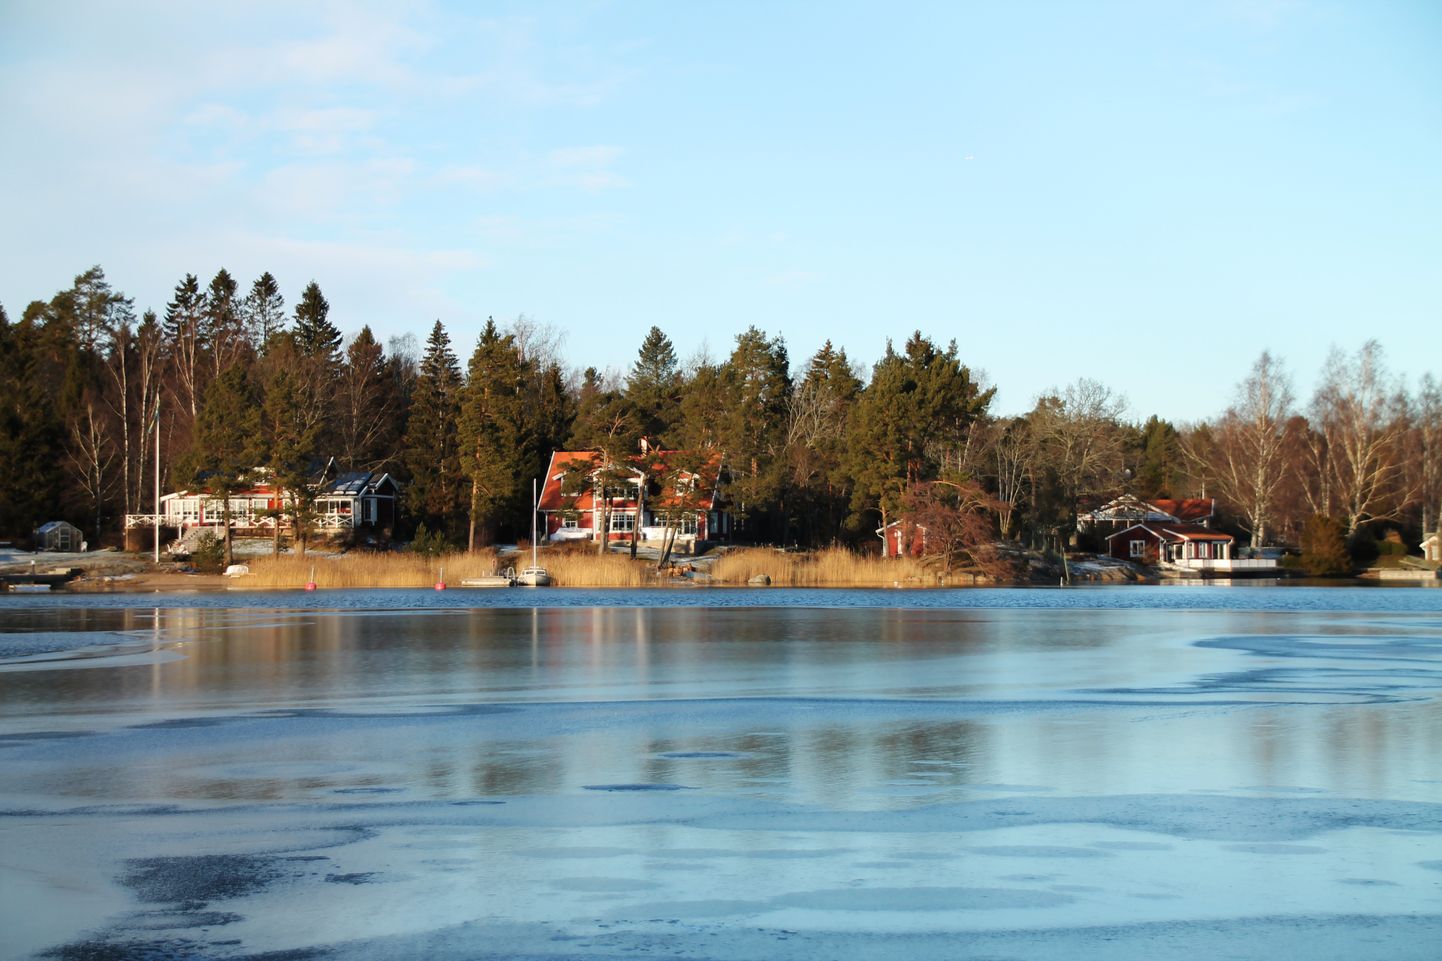 Rootsi järv, millel on jääkate. Pilt on illustreeriv